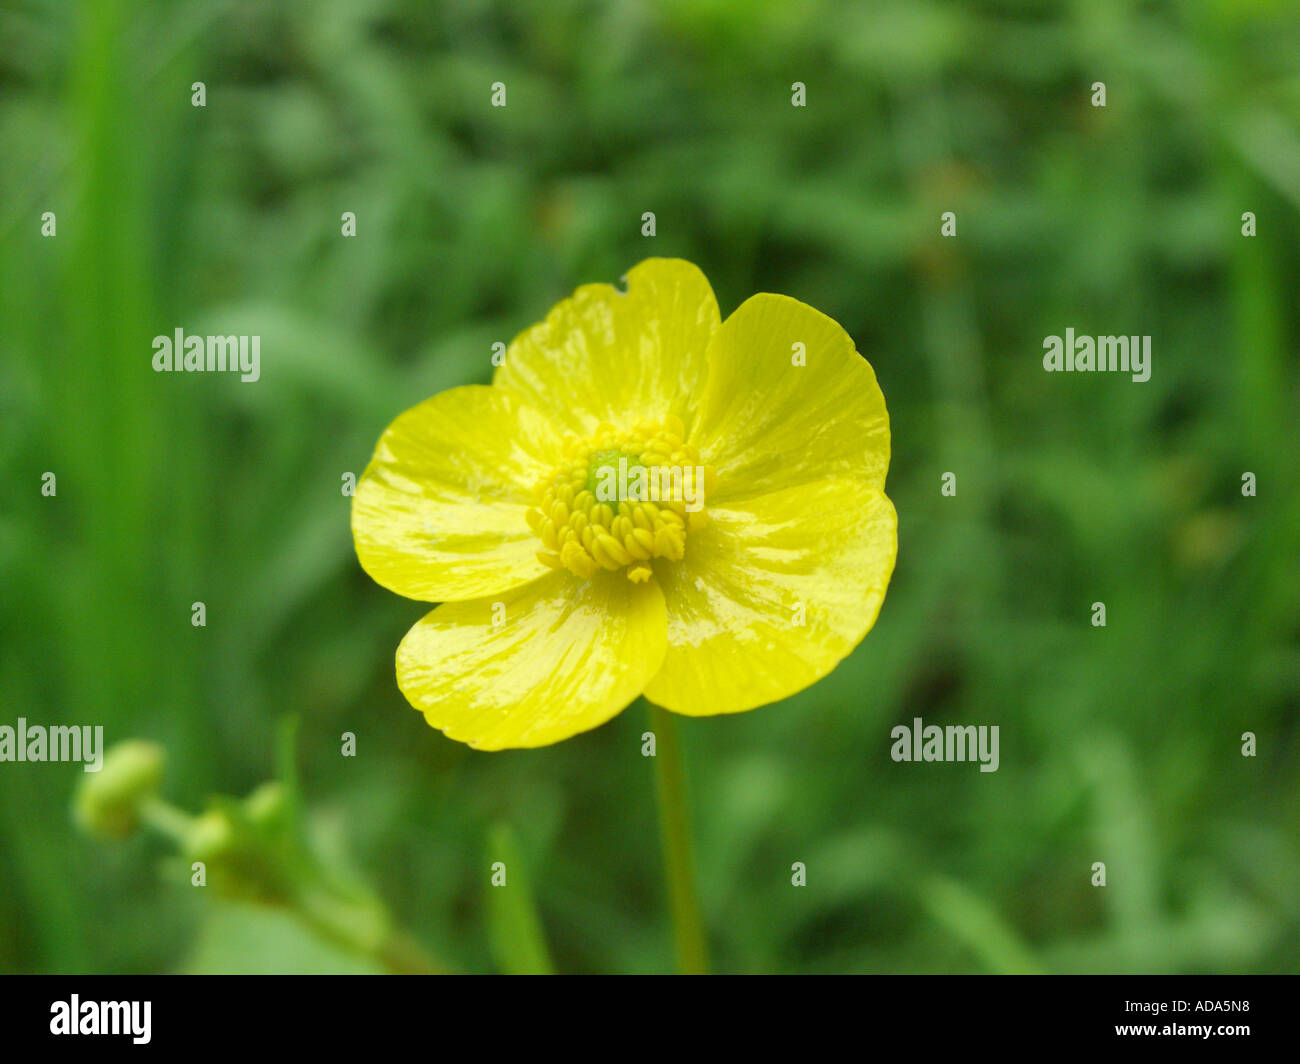 creeping buttercup, lesser spearwort (Ranunculus flammula), flower Stock Photo